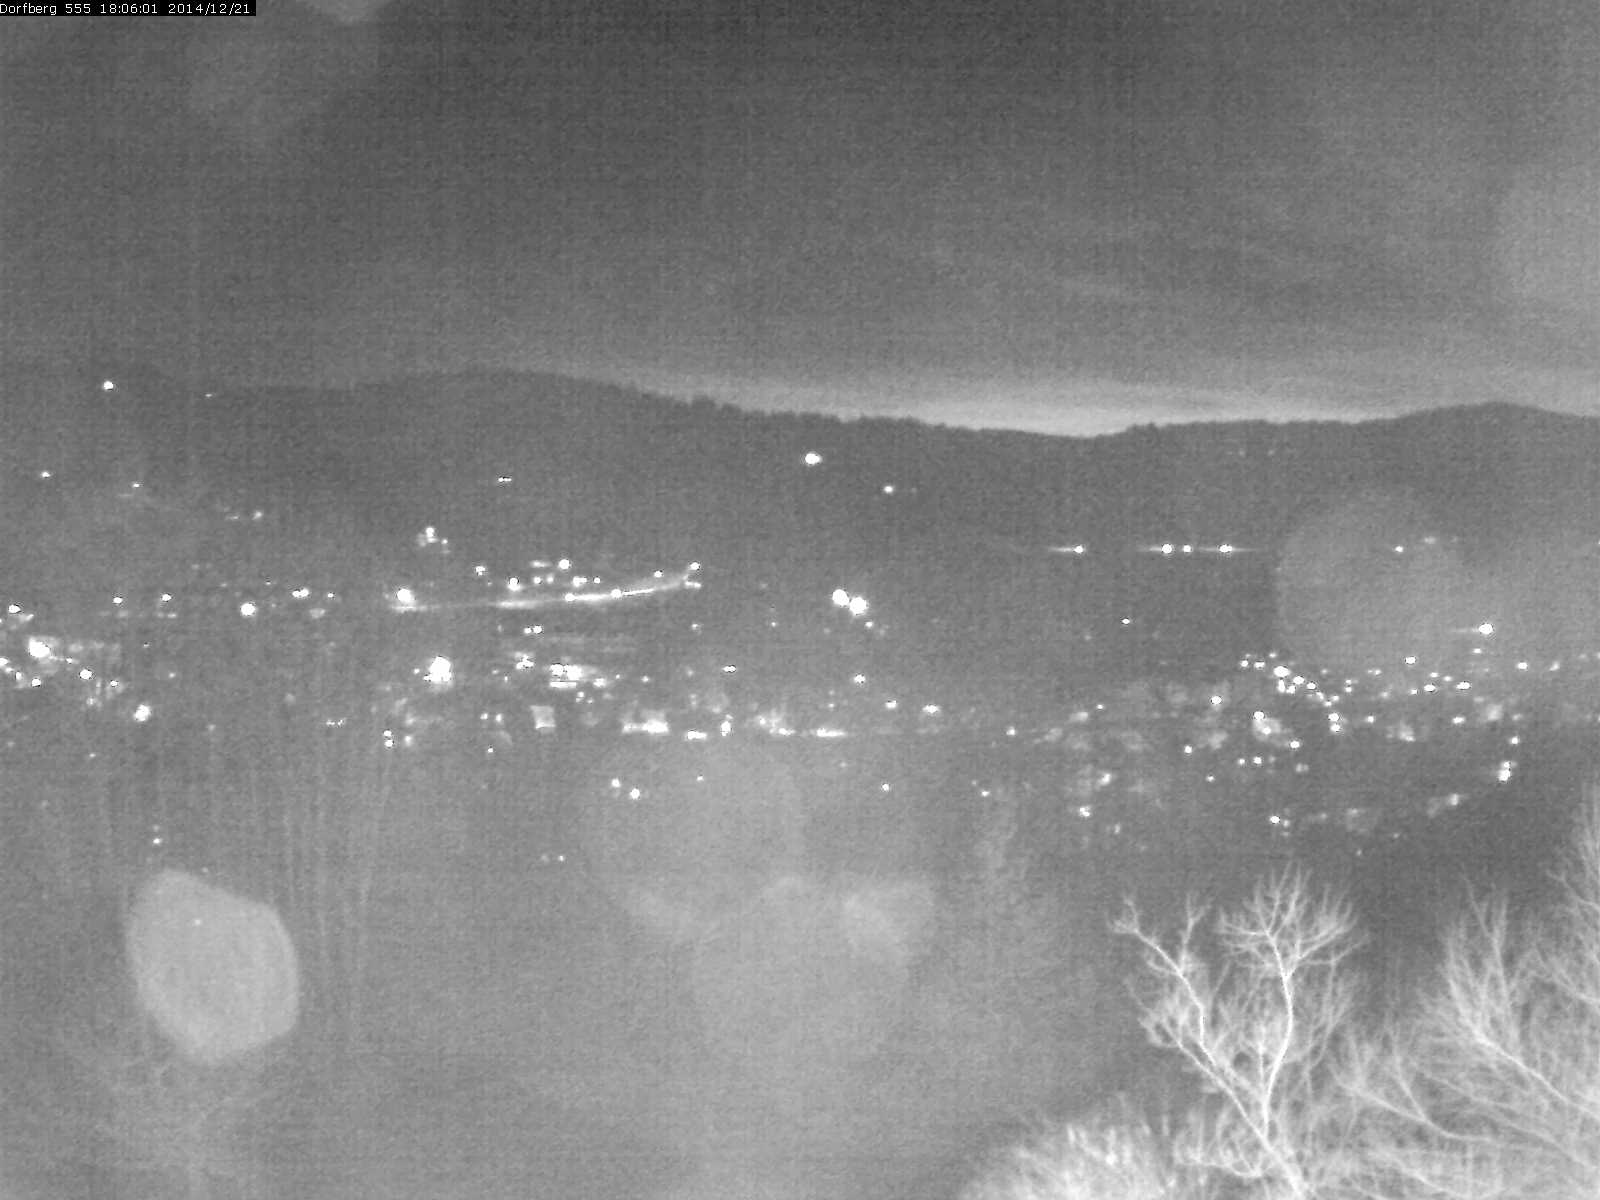 Webcam-Bild: Aussicht vom Dorfberg in Langnau 20141221-180601